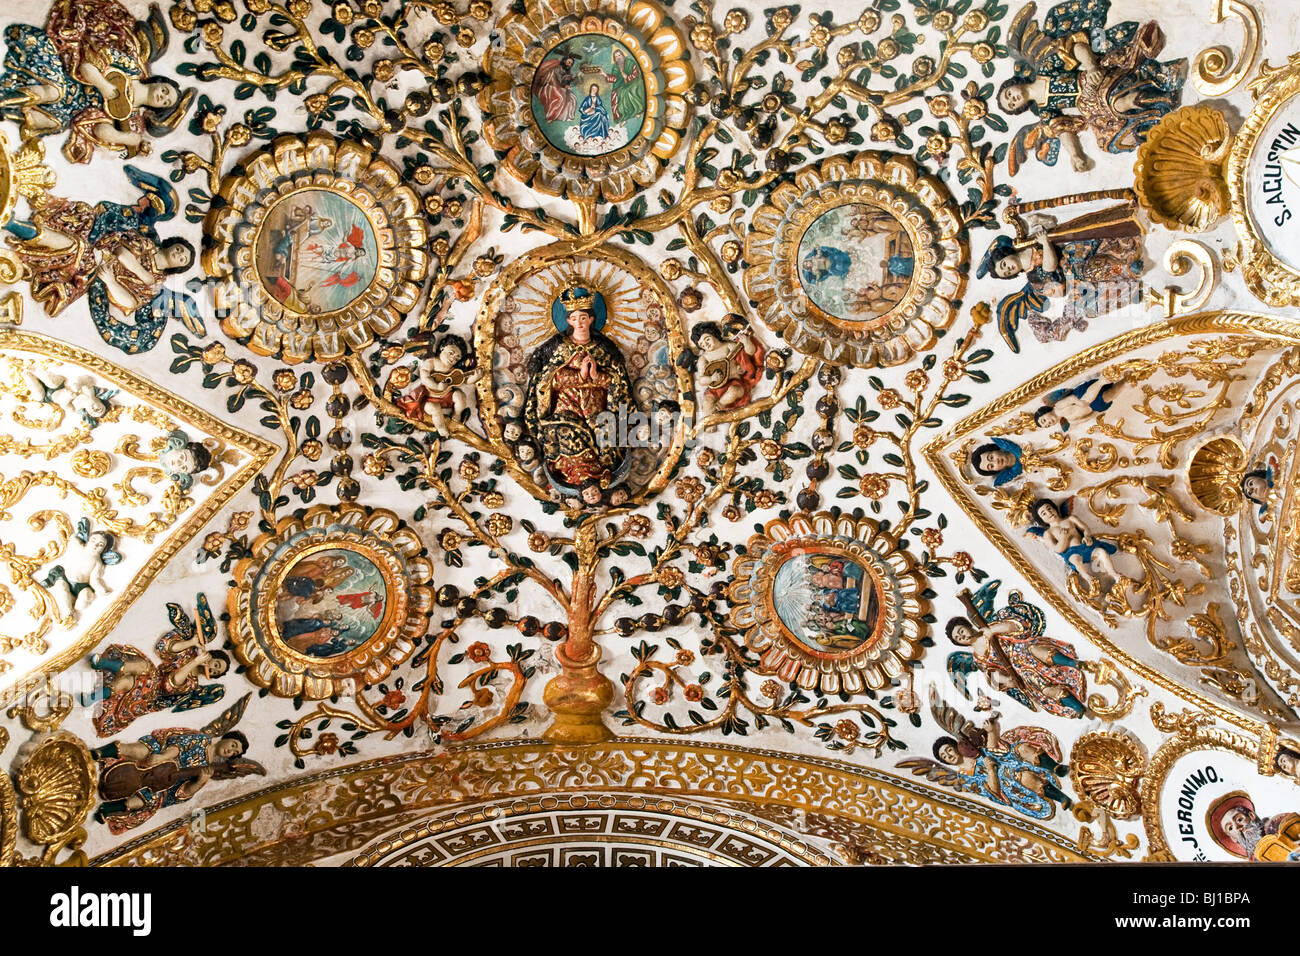 La sezione di riccamente dorato soffitto della Cappella del Rosario con la Vergine centrale circondato da moltitudine celeste Chiesa di Santo Domingo Foto Stock